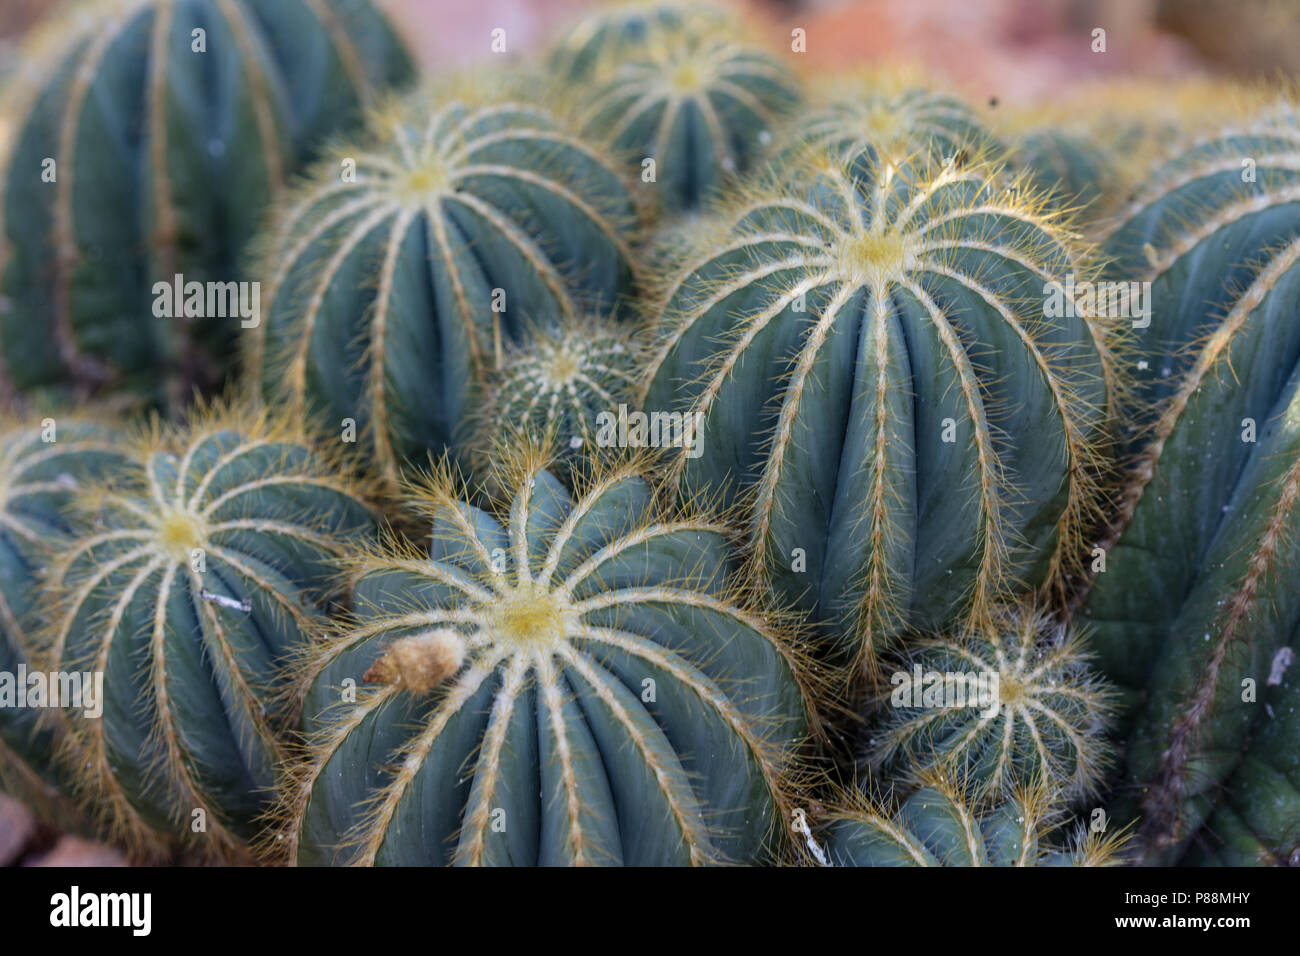 many pardoria magnifica succulent cactus with stones close up Stock Photo